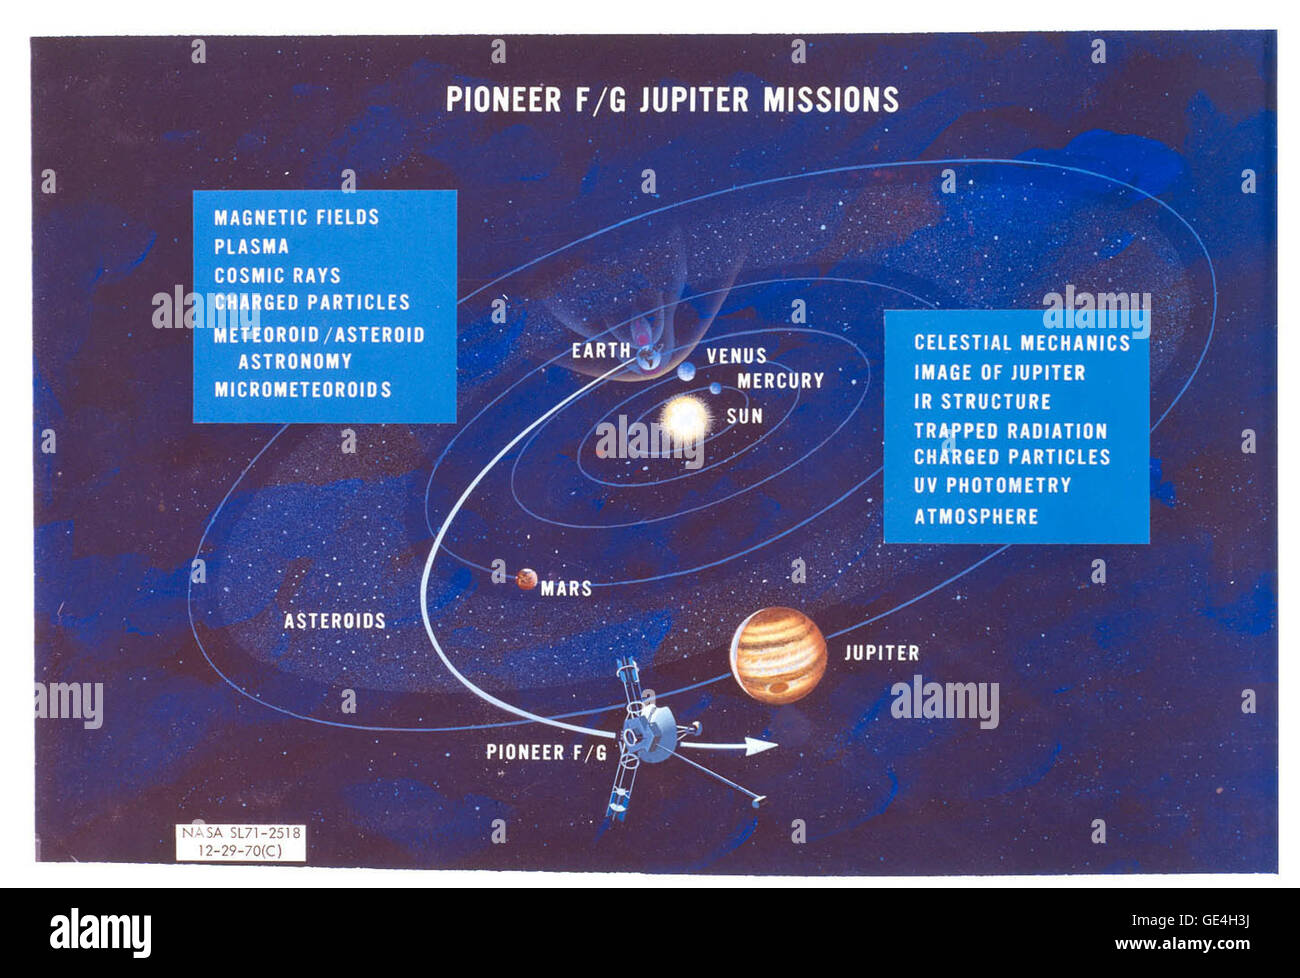 Questa immagine, disegnato nel 1970, è un artista di rendering della sonda spaziale Pioneer 10 traiettoria, con i pianeti marcato e un elenco degli strumenti che erano destinati ad essere volato. Prima dell'uso di computer animation, gli artisti sono stati noleggiati dal JPL e NASA per raffigurare un veicolo spaziale in volo, per uso come un aiuto visivo per promuovere il progetto durante la fase di sviluppo. Pioneer 10 è stato gestito dalla NASA Ames Research Center di Moffett Field, California. Il Pioneer F spaziali, come era noto prima del lancio, è stata progettata e costruita dalla TRW Systems Group, Inc. Il JPL sviluppò tre strumenti che hanno volato sul spacecra Foto Stock